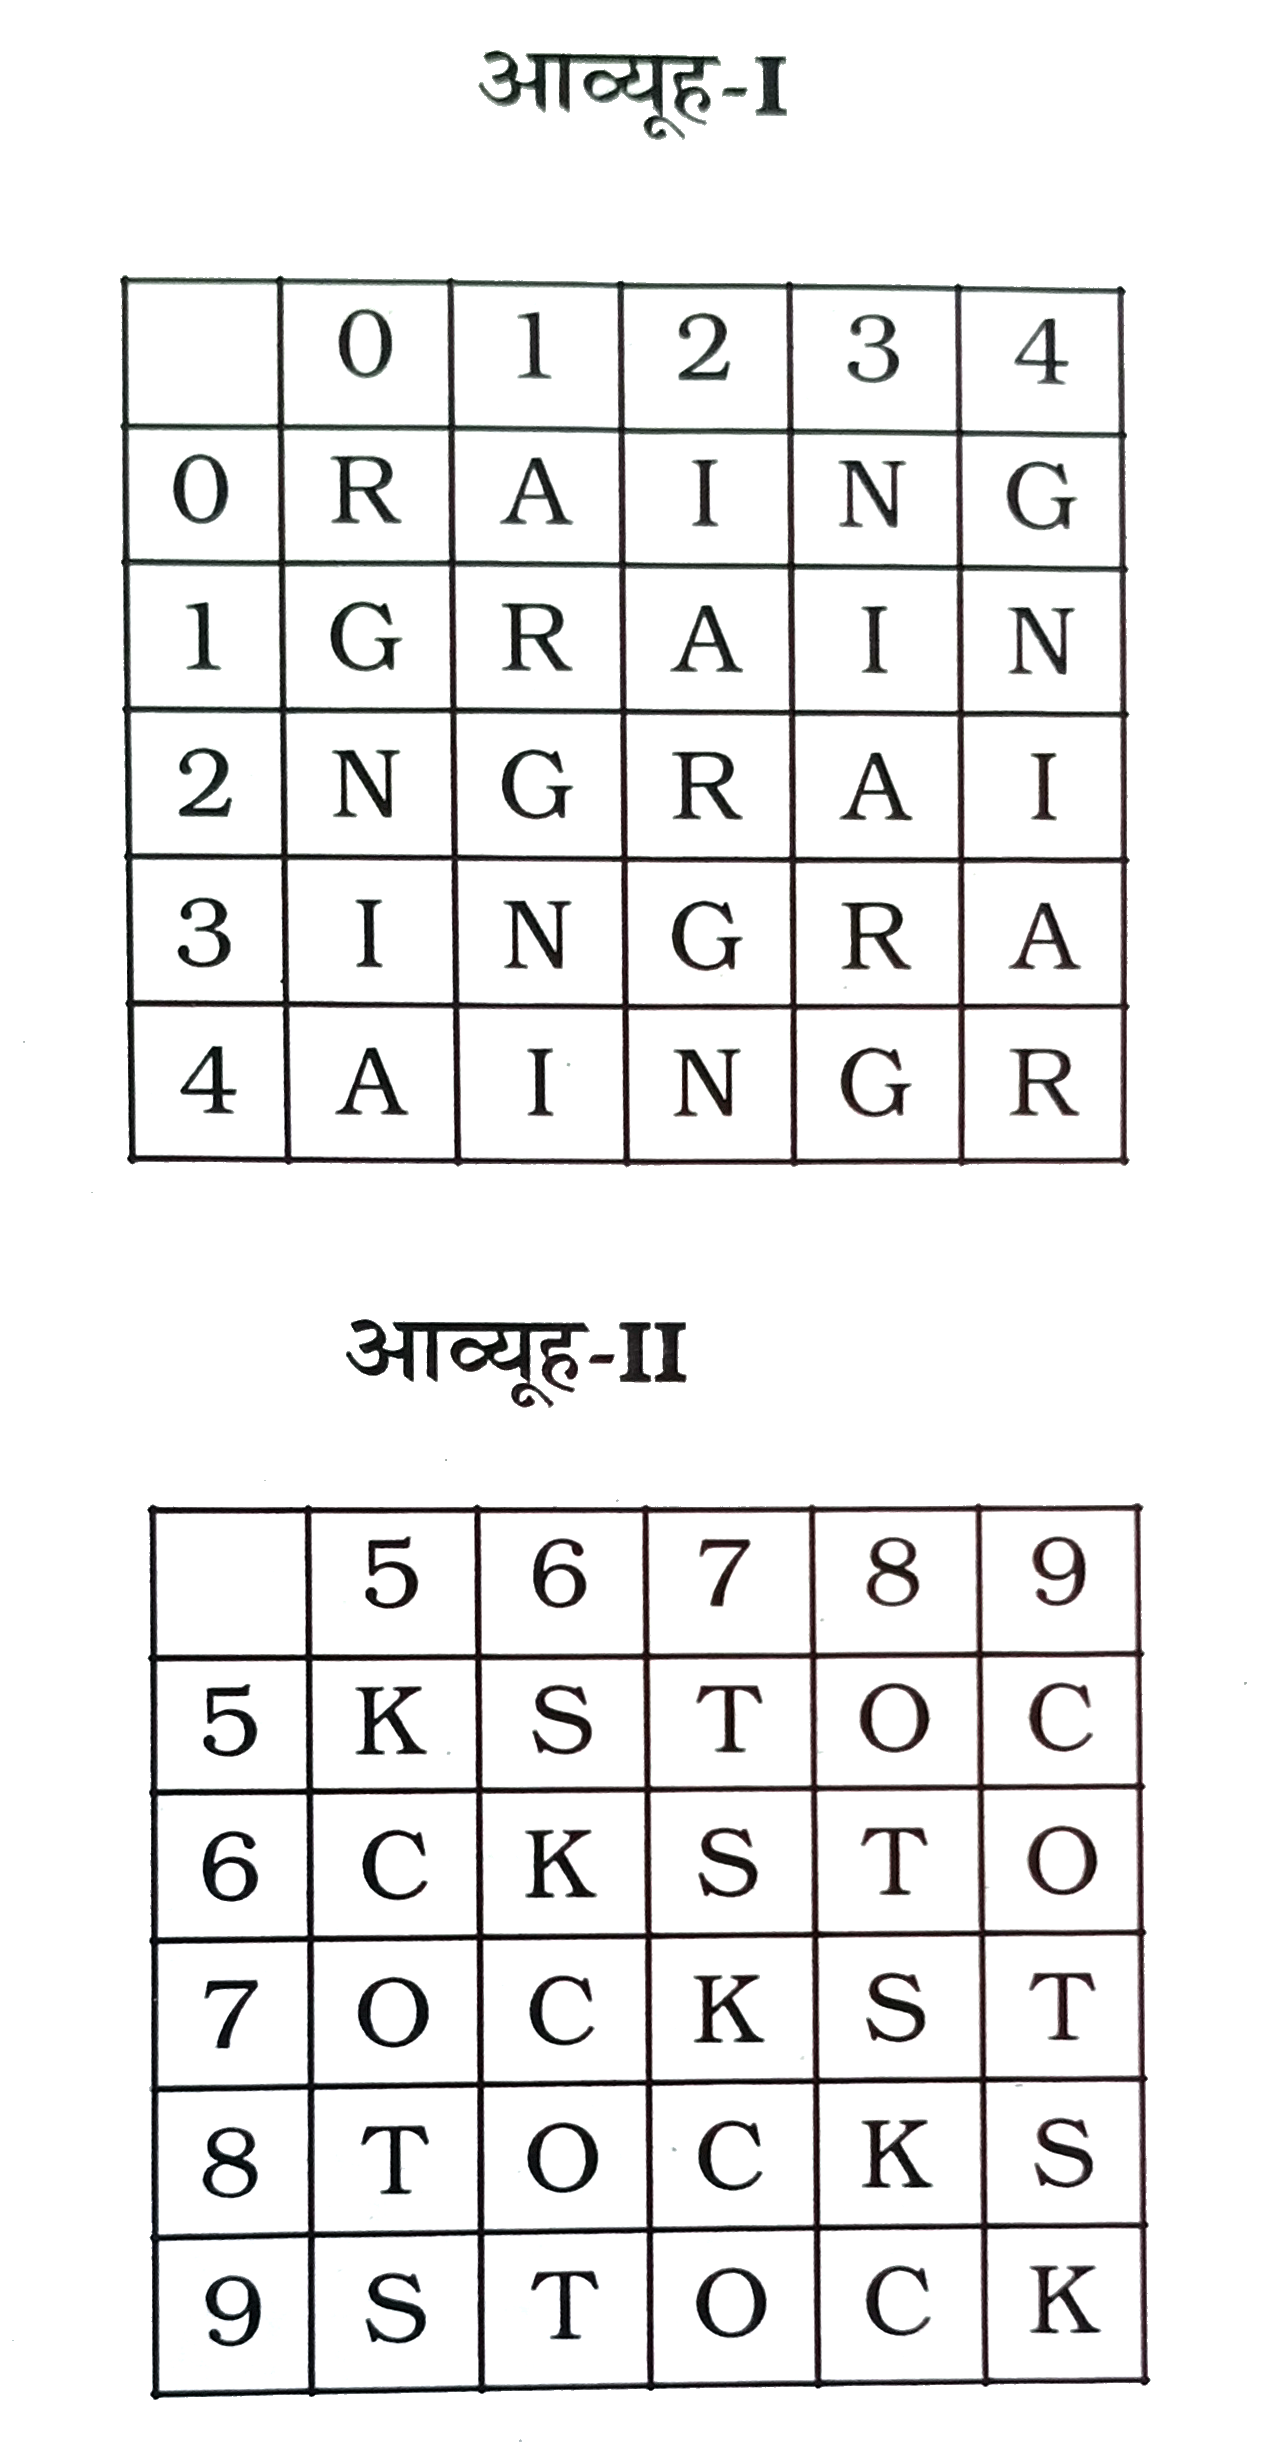 एक शब्द केवल एक संख्या-समूह द्वारा दर्शाया गया है, जैसा कि विकल्पों में से किसी एक में दिया गया है । विकल्पों में दिए गए संख्या-समूह अक्षरों के दो वर्गो द्वारा दर्शाए गए है, जैसा कि नीचे दिए गए दो आव्यूहों में है। आव्यूह -I के स्तम्भ और पंक्ति की संख्या 0 से 4 दी गई है और आव्यूह-II की 5 से 9 । इन आव्यूहों से एक अक्षर को पहले उसकी पंक्ति और बाद में स्तम्भ संख्या द्वारा दर्शाया जा सकता है । उदाहरण के लिए, A को 12,23, आदि द्वारा दर्शाया जा सकता है तथा K को 55,77, आदि द्वारा दर्शाया जा सकता है । इसी तरह से, आपको शब्द STRONG के लिए समूह पहचानना है ।